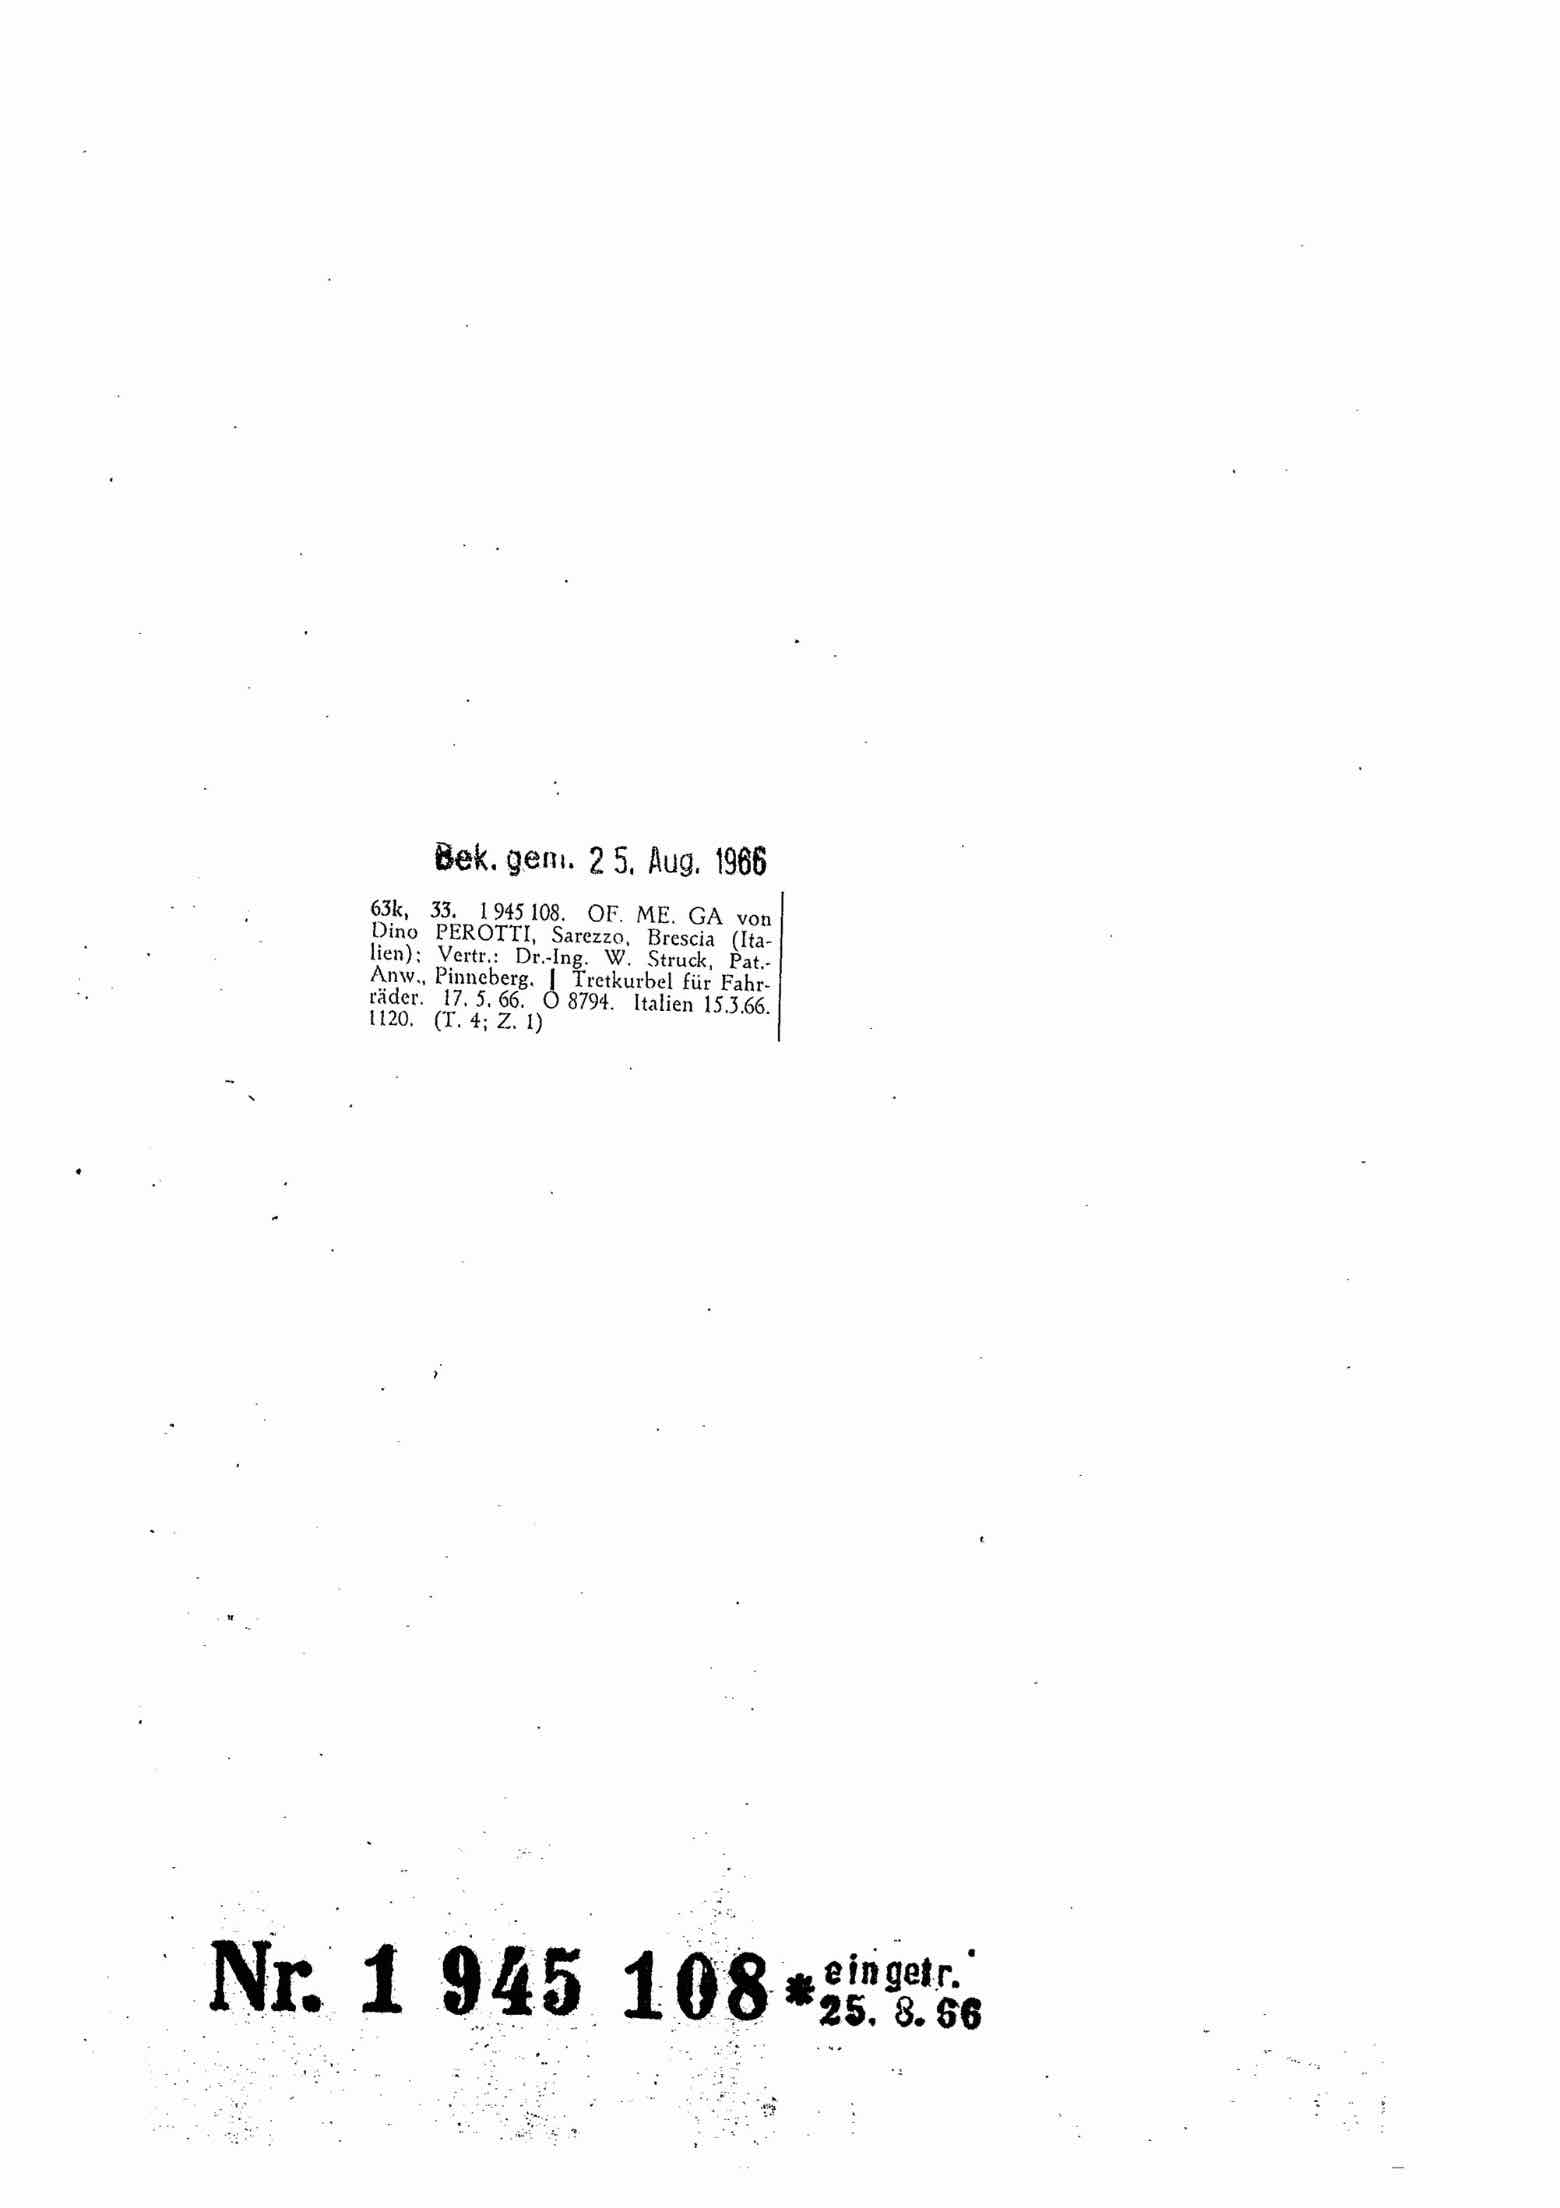 German Patent 1,945,108 - Ofmega scan 1 main image